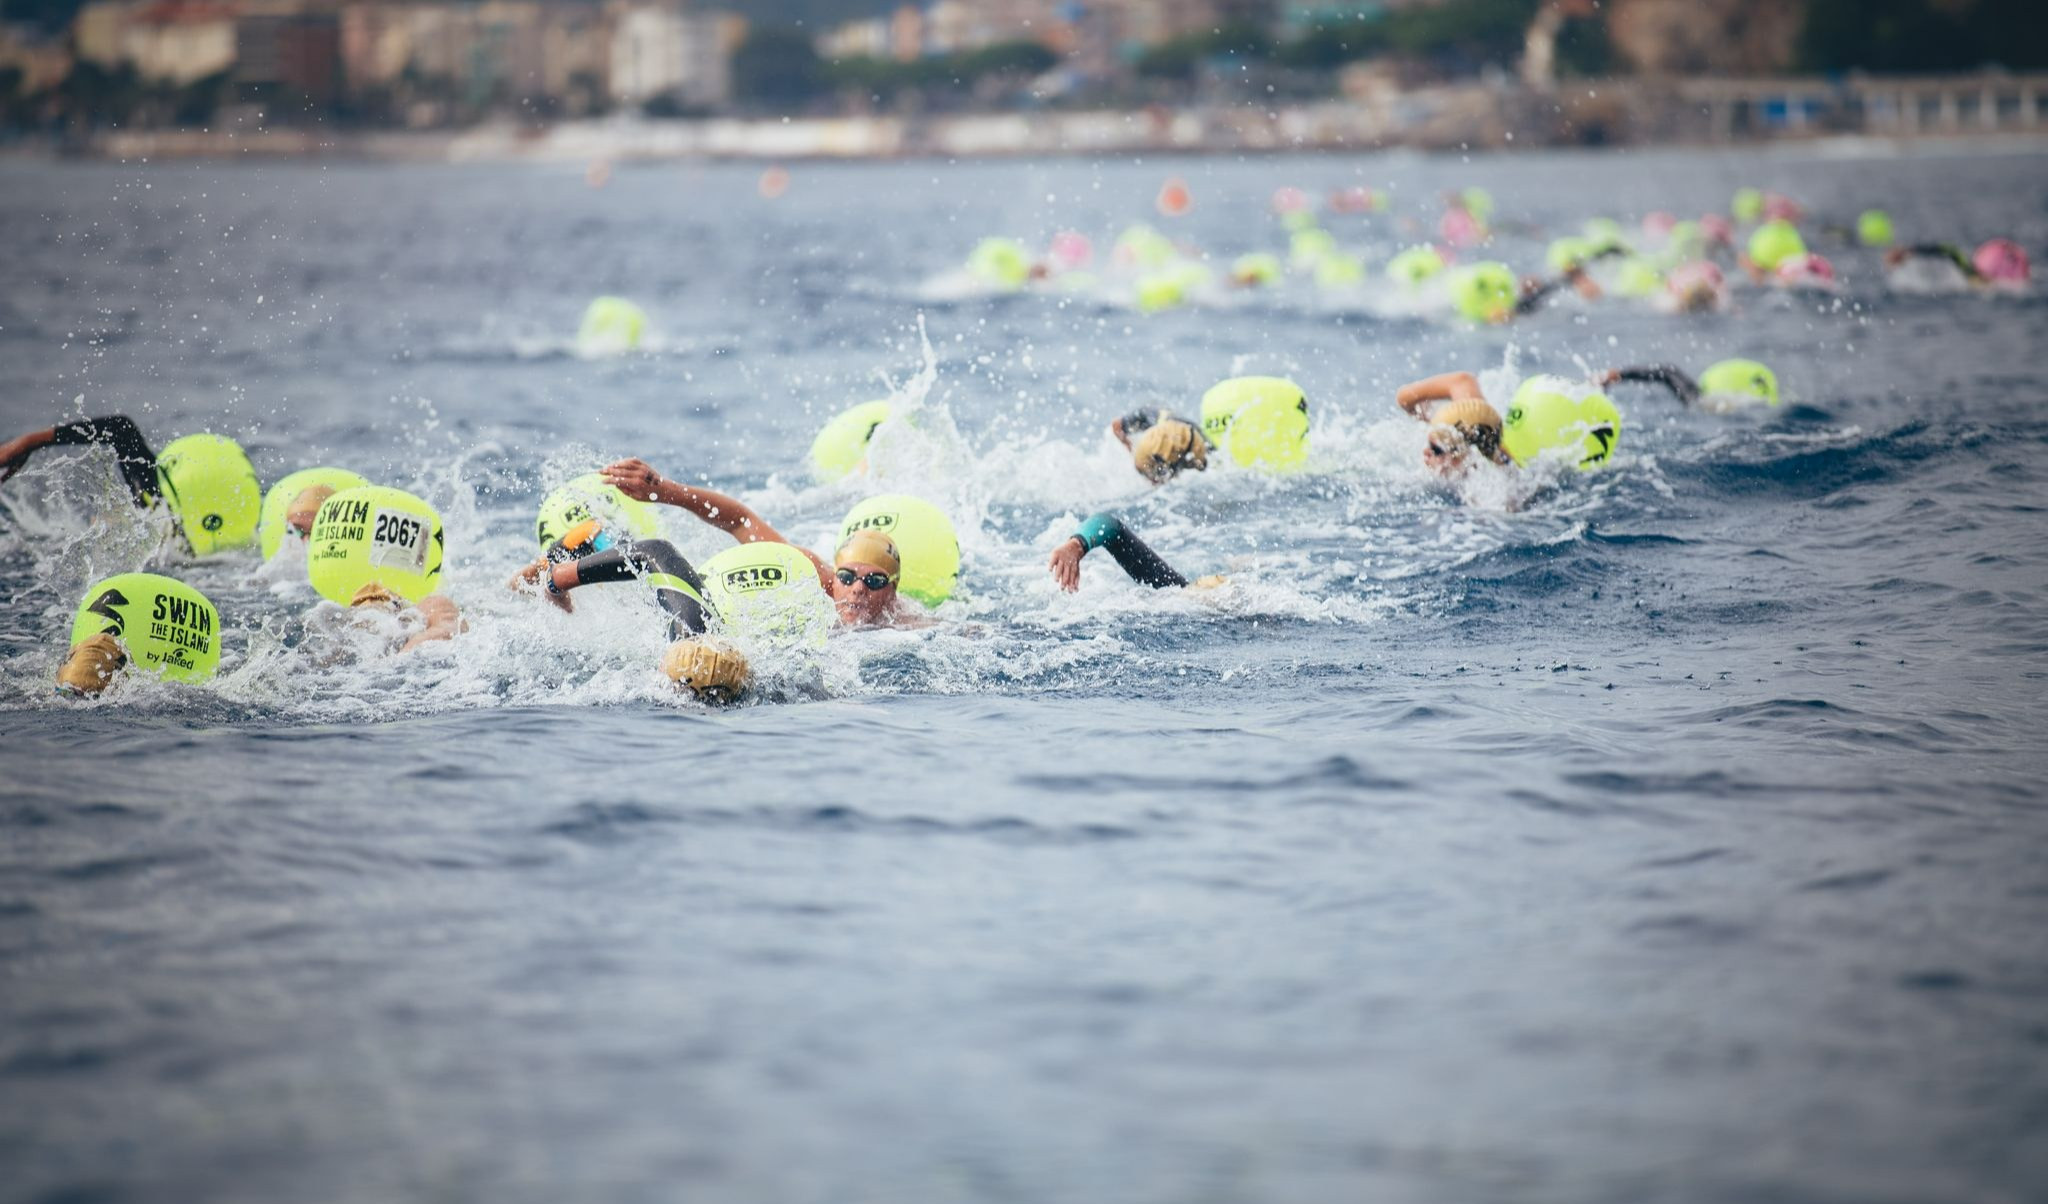 Nuoto in acque libere, i risultati delle gare intorno all'Isola di Bergeggi